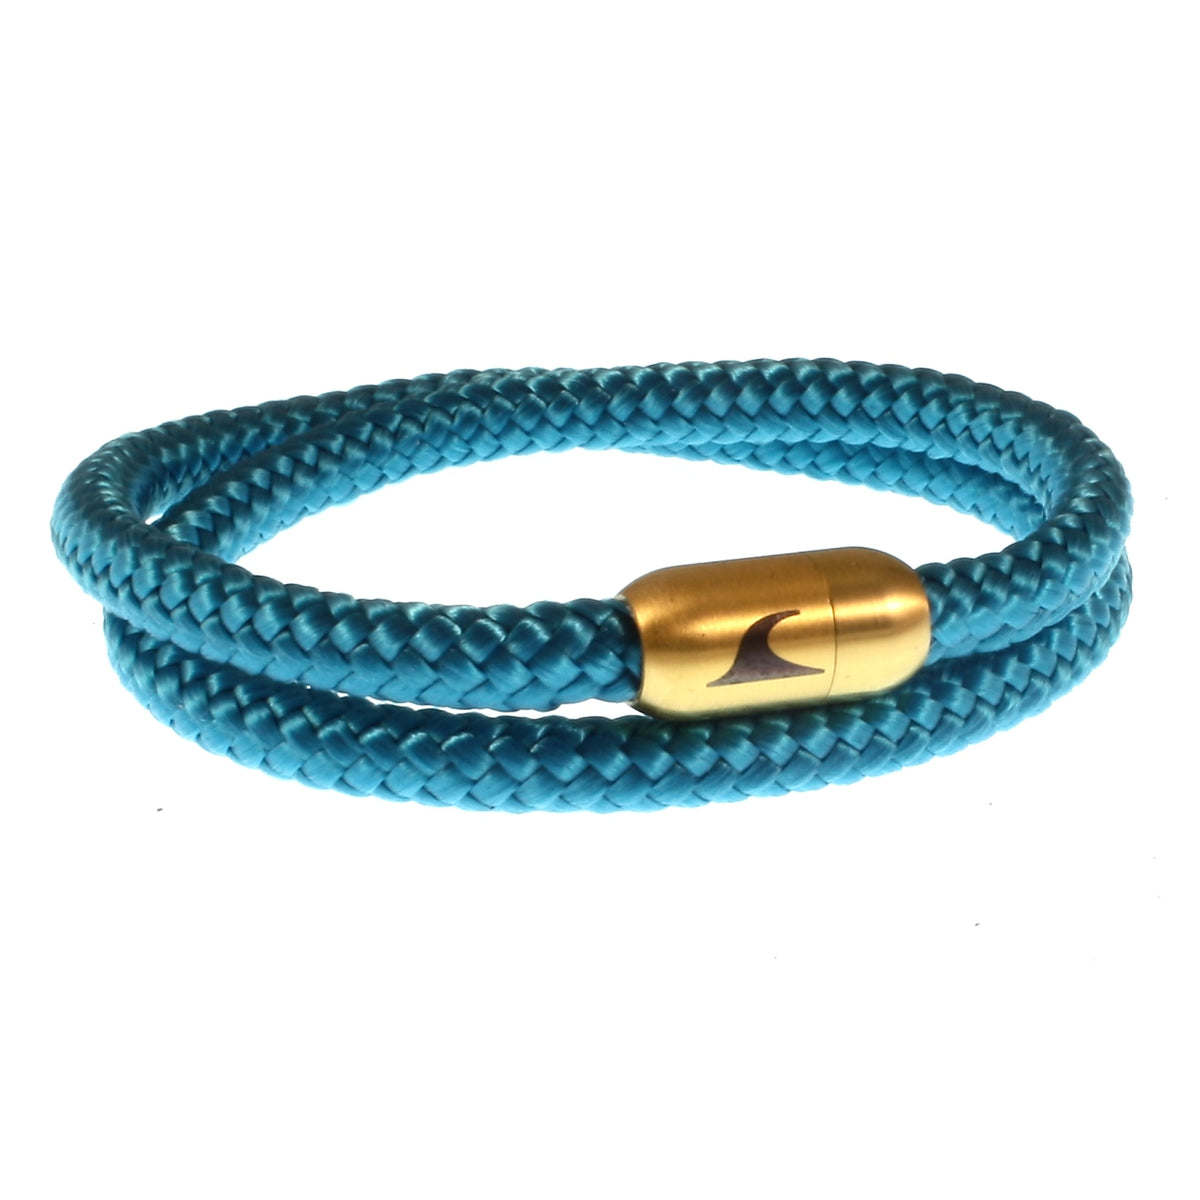 Herren-Segeltau-Armband-damen-hawaii-blau-gold-Edelstahlverschluss-vorn-wavepirate-shop-st